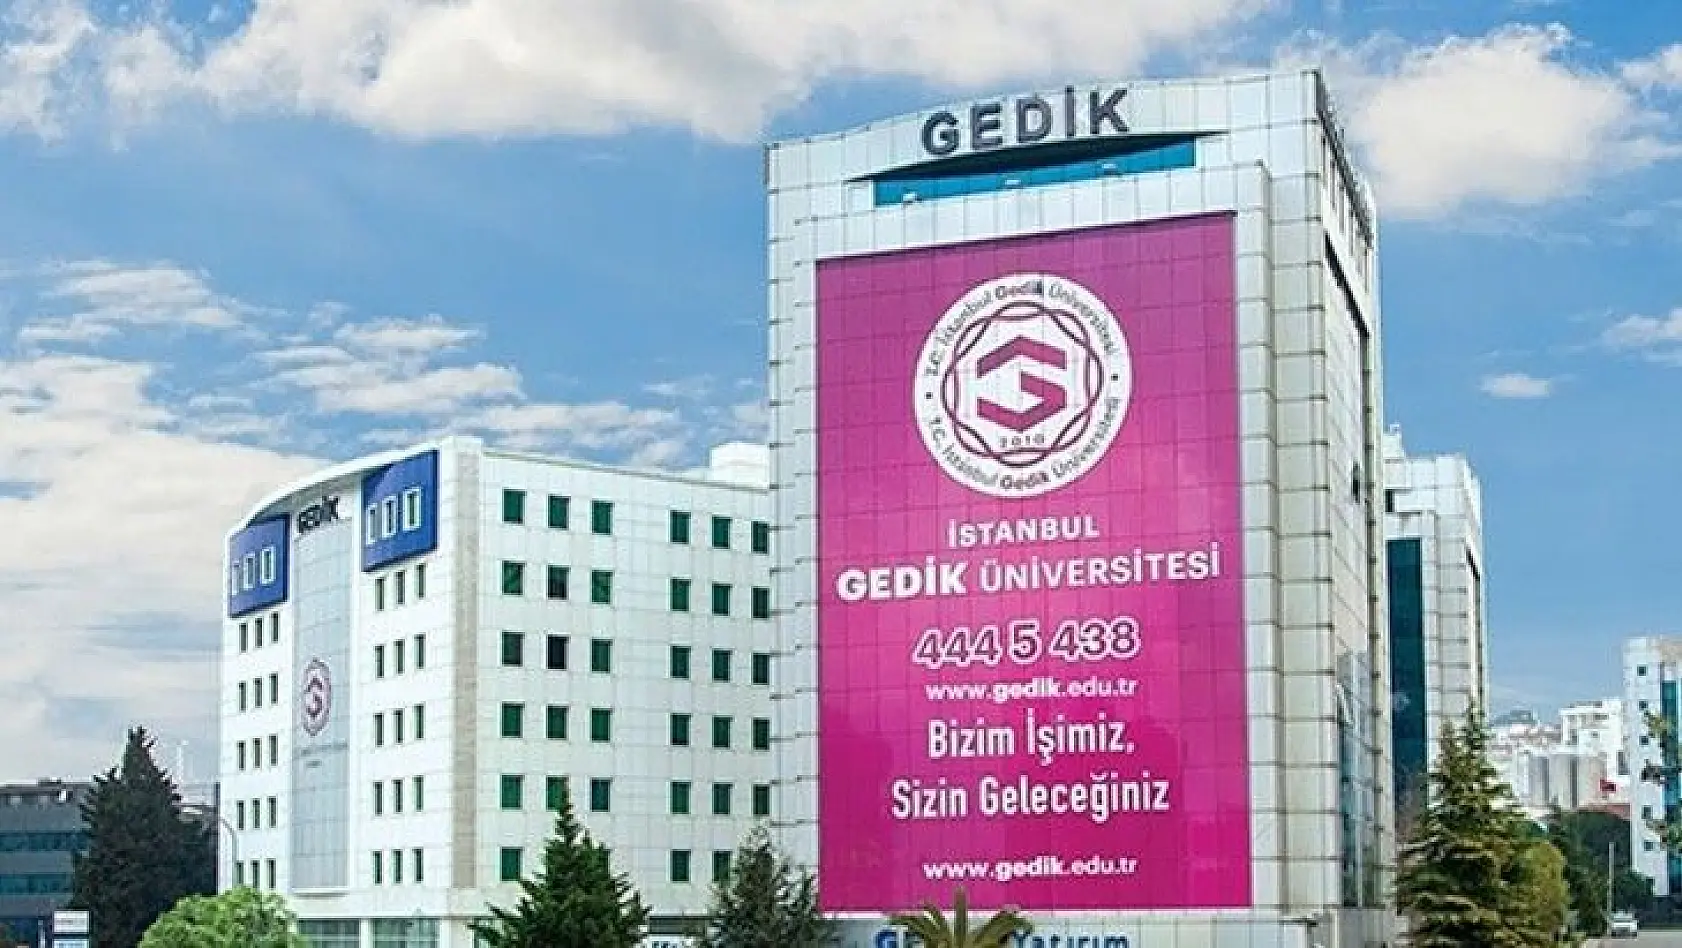 İstanbul Gedik Üniversitesi 3 öğretim üyesi alacak